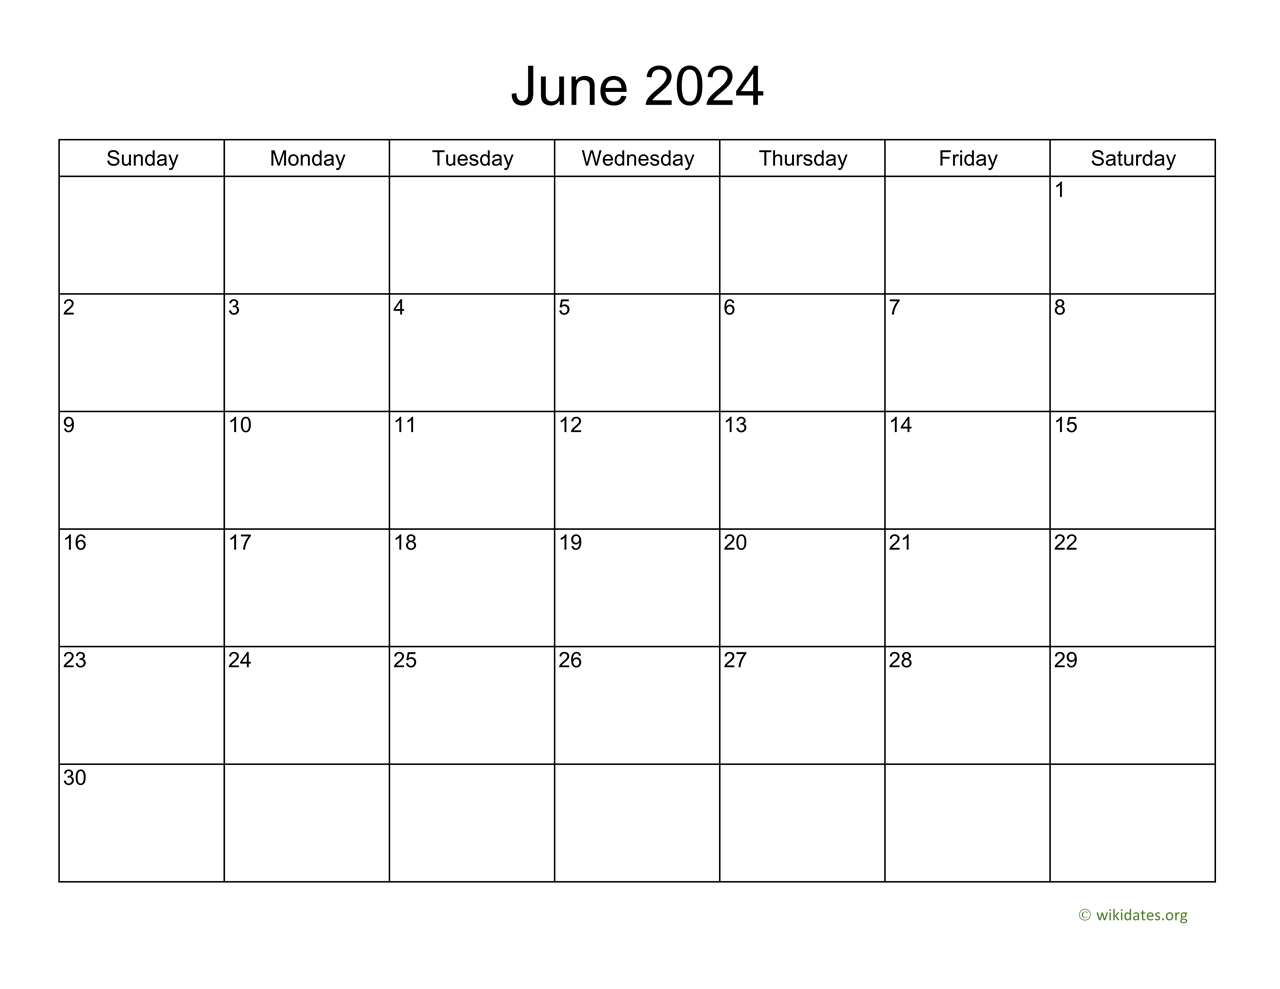 Basic Calendar for June 2024 | WikiDates.org